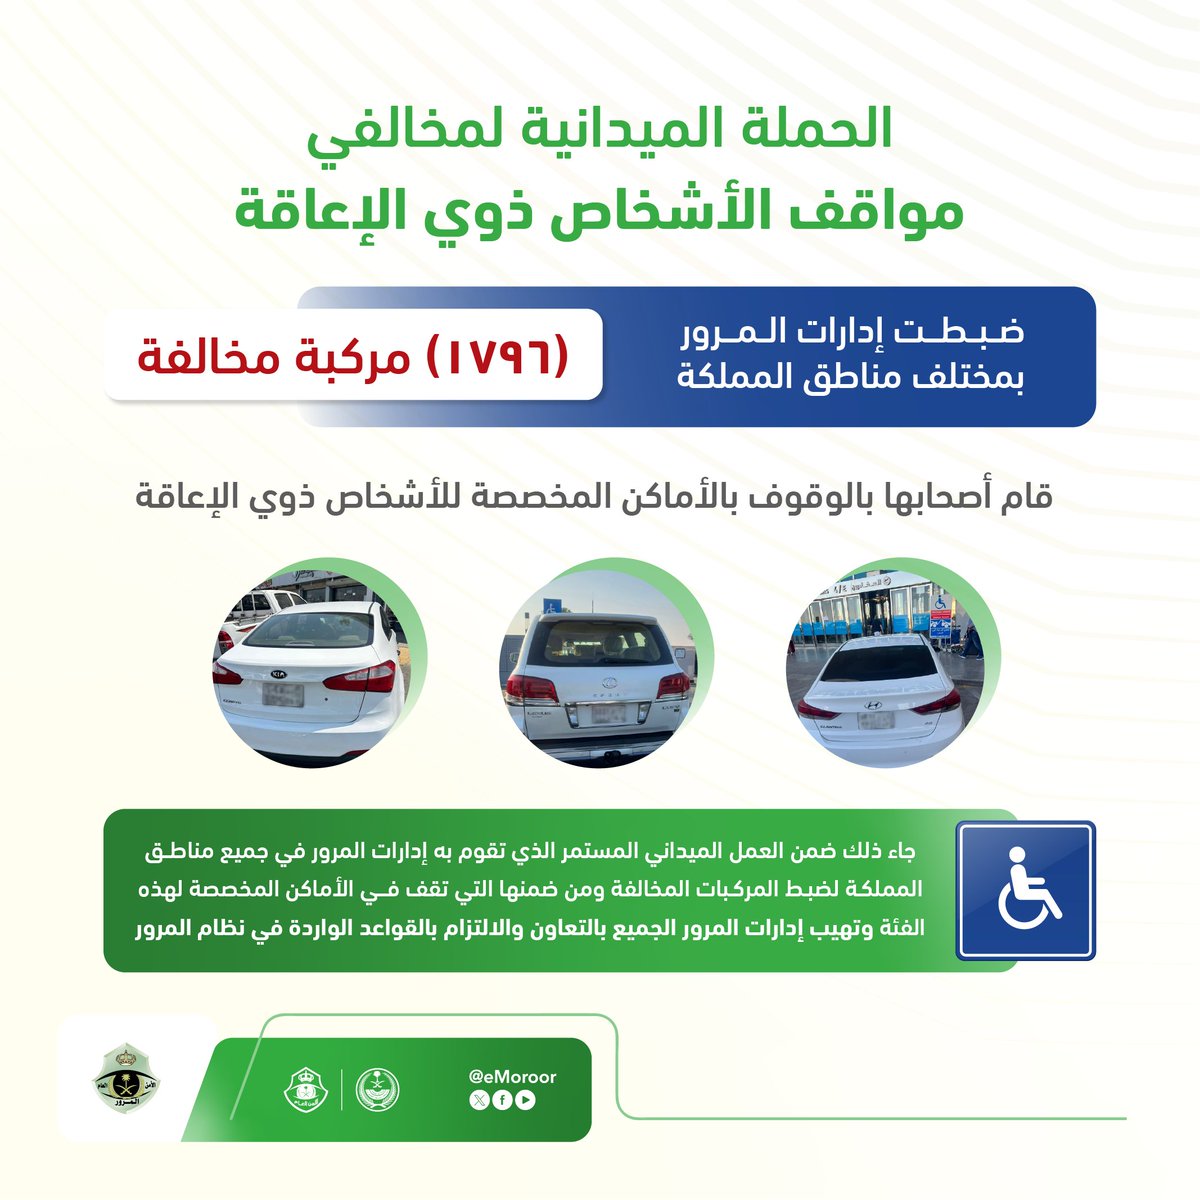 تنفيذ الحملة الميدانية لضبط المركبات المتوقفة في الأماكن المخصصة للأشخاص ذوي الإعاقة

⁧#المرور_السعودي⁩